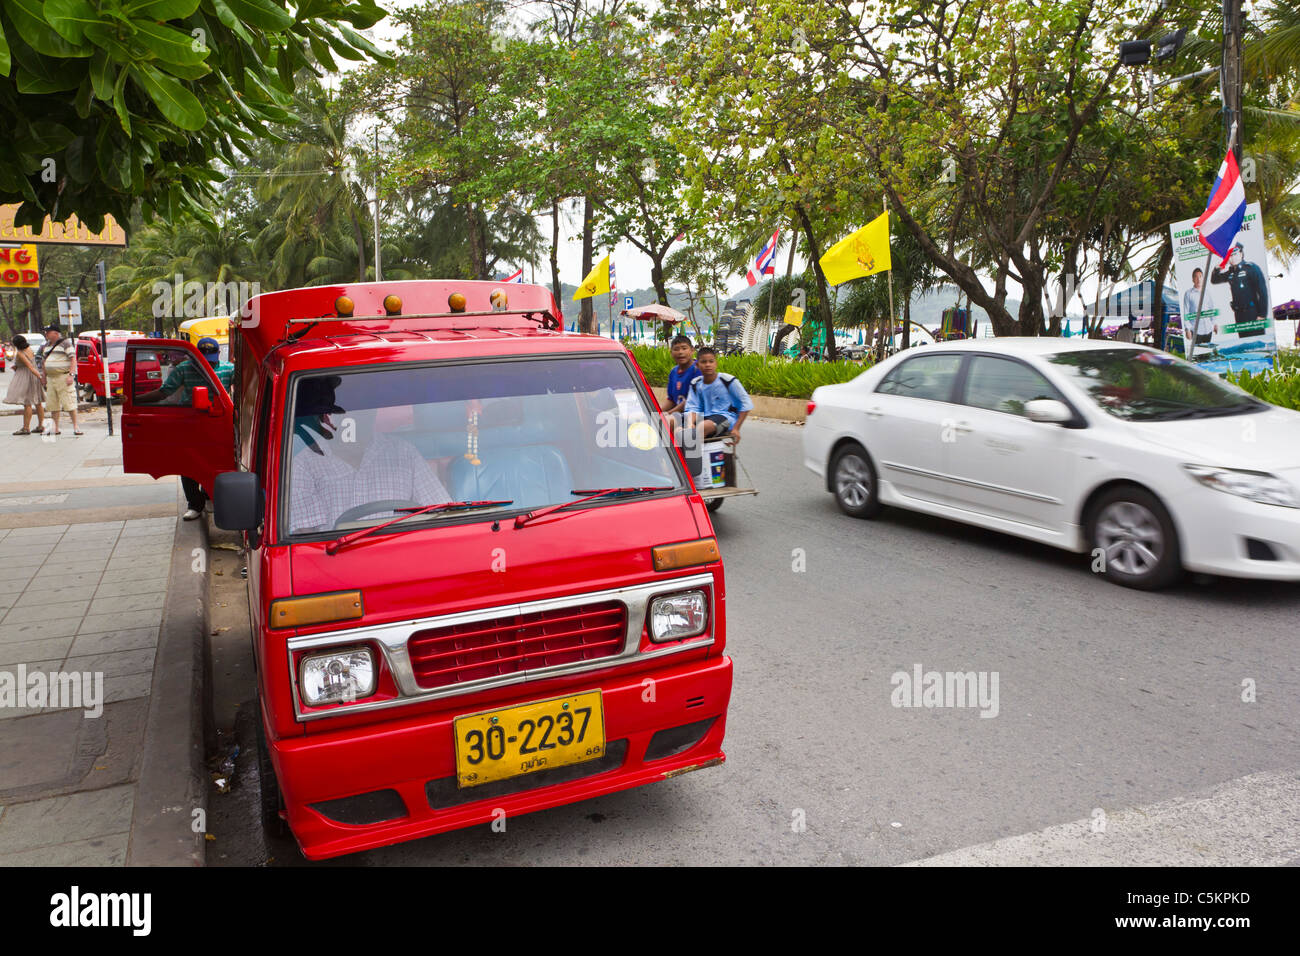 A Tuk-Tuk, or small taxi in Patong, Phuket, Thailand Stock Photo